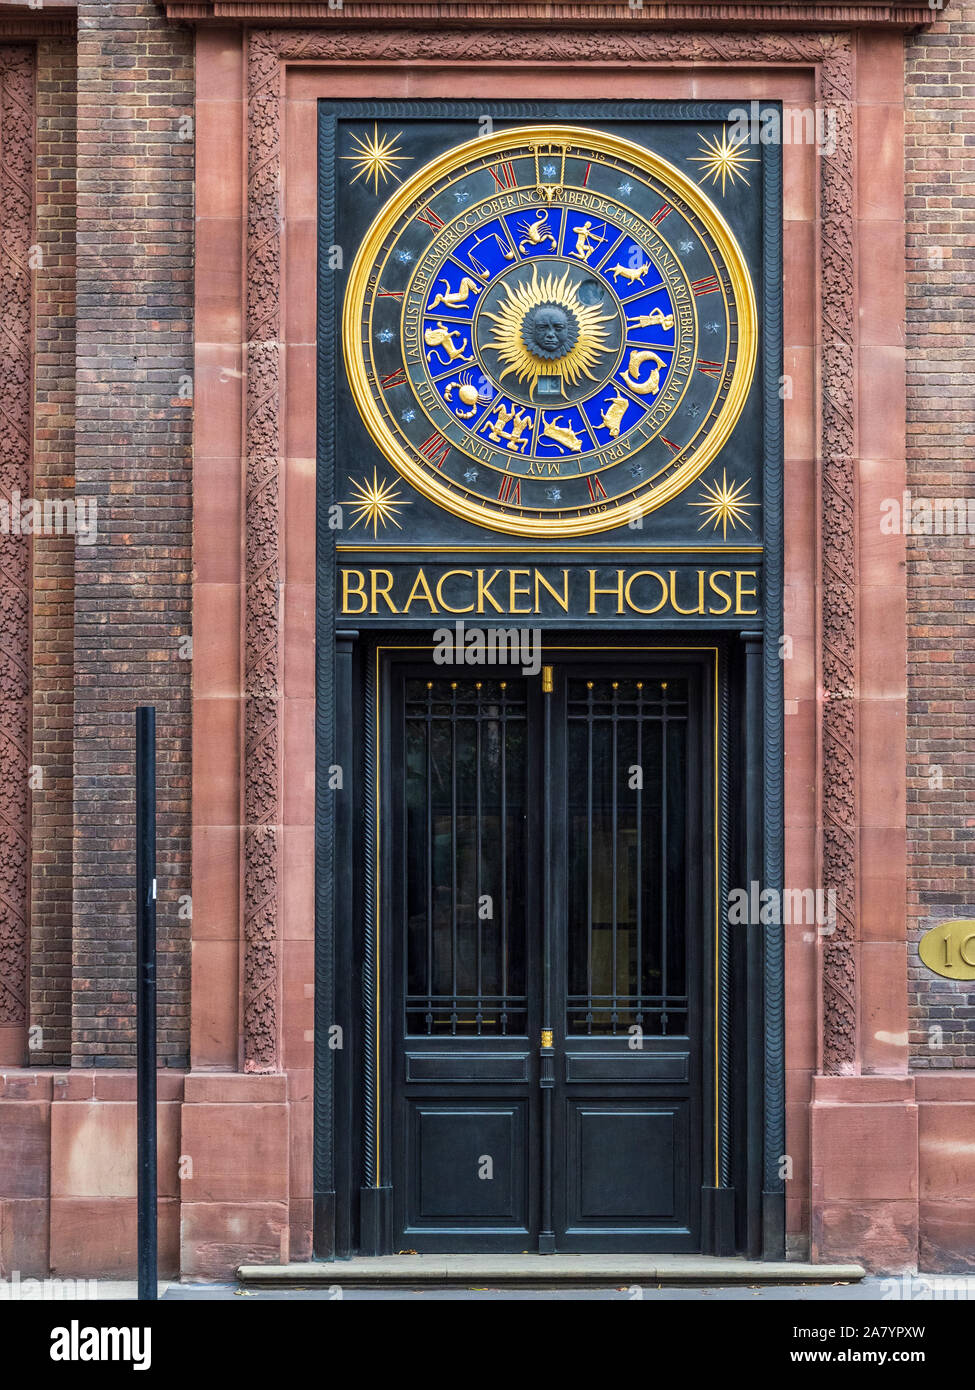 Horloge astronomique sur le Financial Times FT à l'AC rénovation Bracken House dans la ville de Londres. Designers Frank Dobson et Philip Bentham Banque D'Images